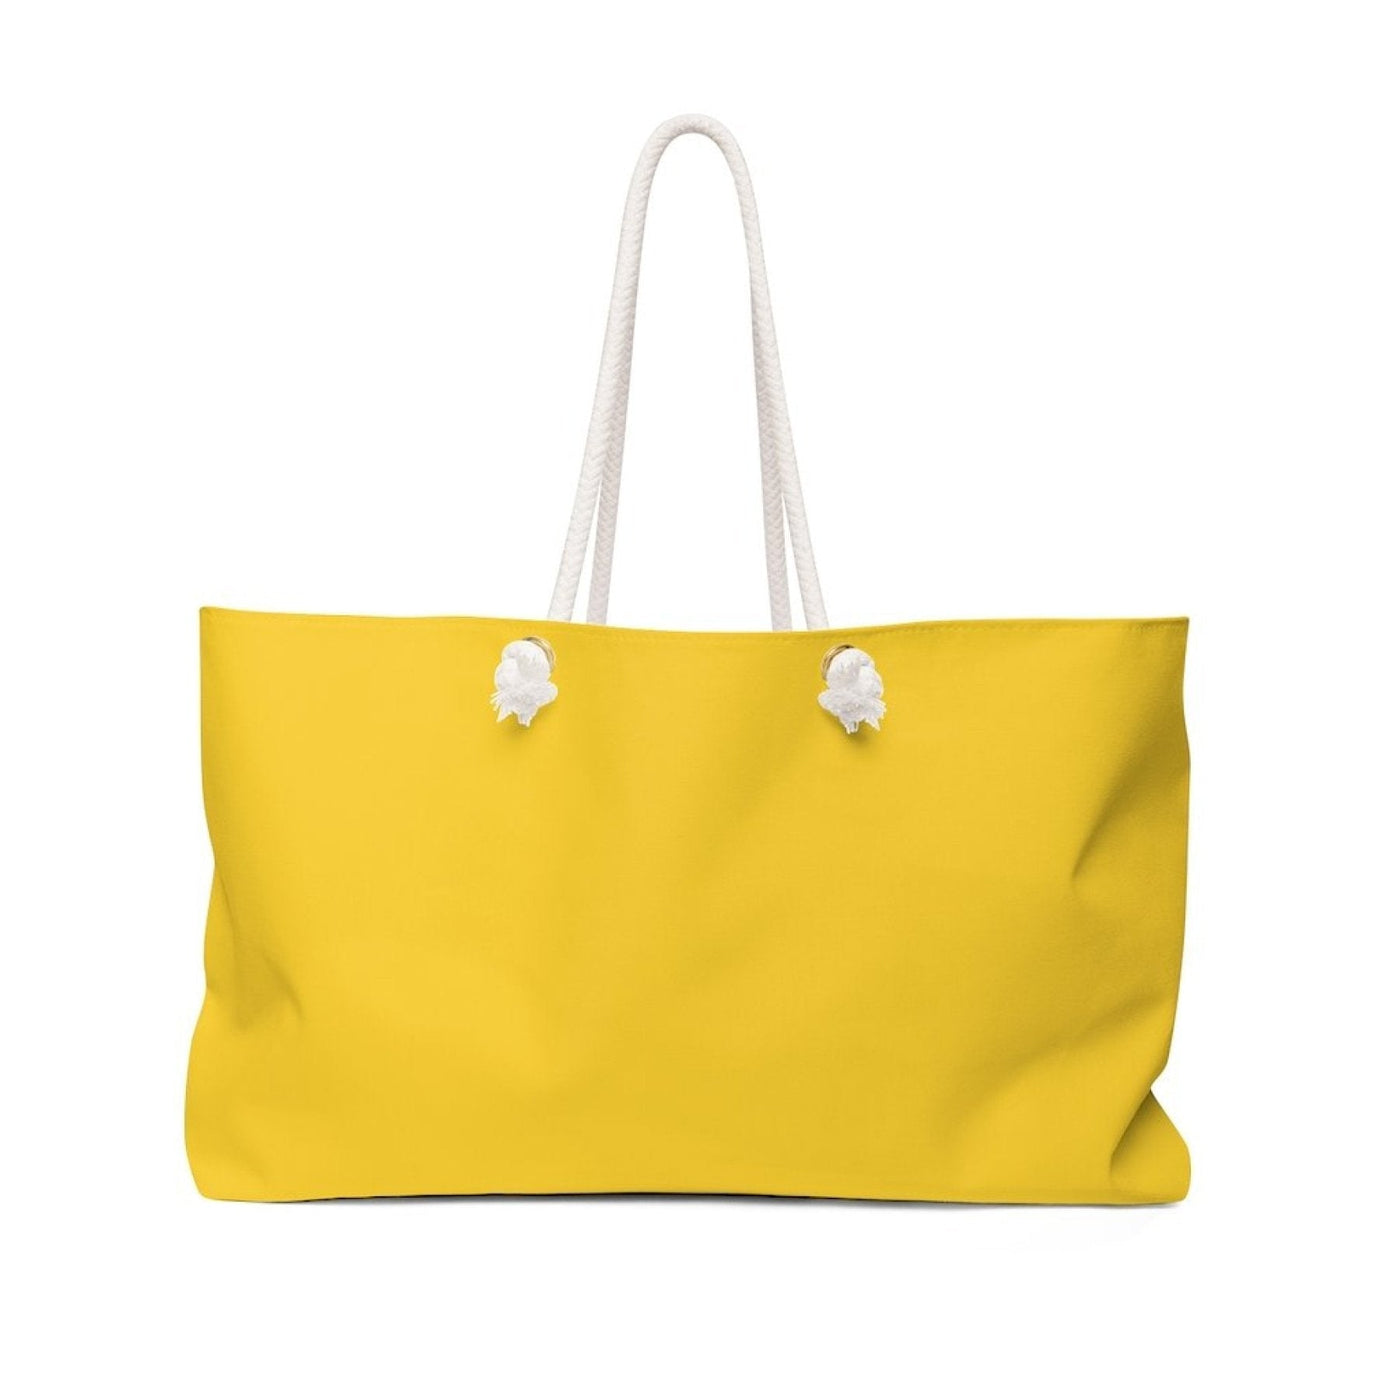 Weekender Tote Bag Golden Yellow - Bags | Tote Bags | Weekender